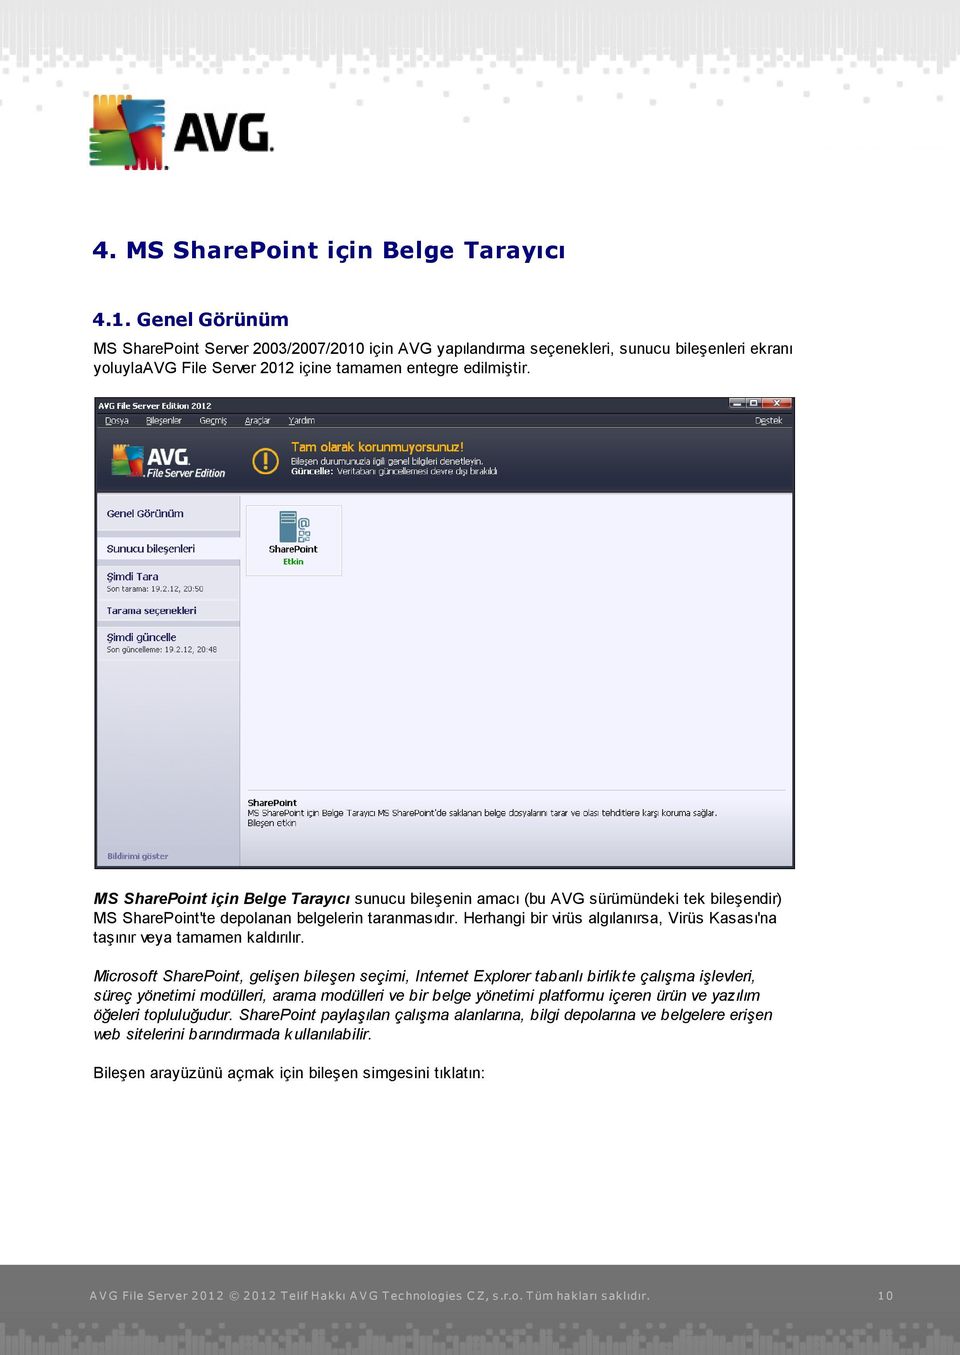 MS SharePoint için Belge Tarayıcı sunucu bileşenin amacı (bu AVG sürümündeki tek bileşendir) MS SharePoint'te depolanan belgelerin taranmasıdır.